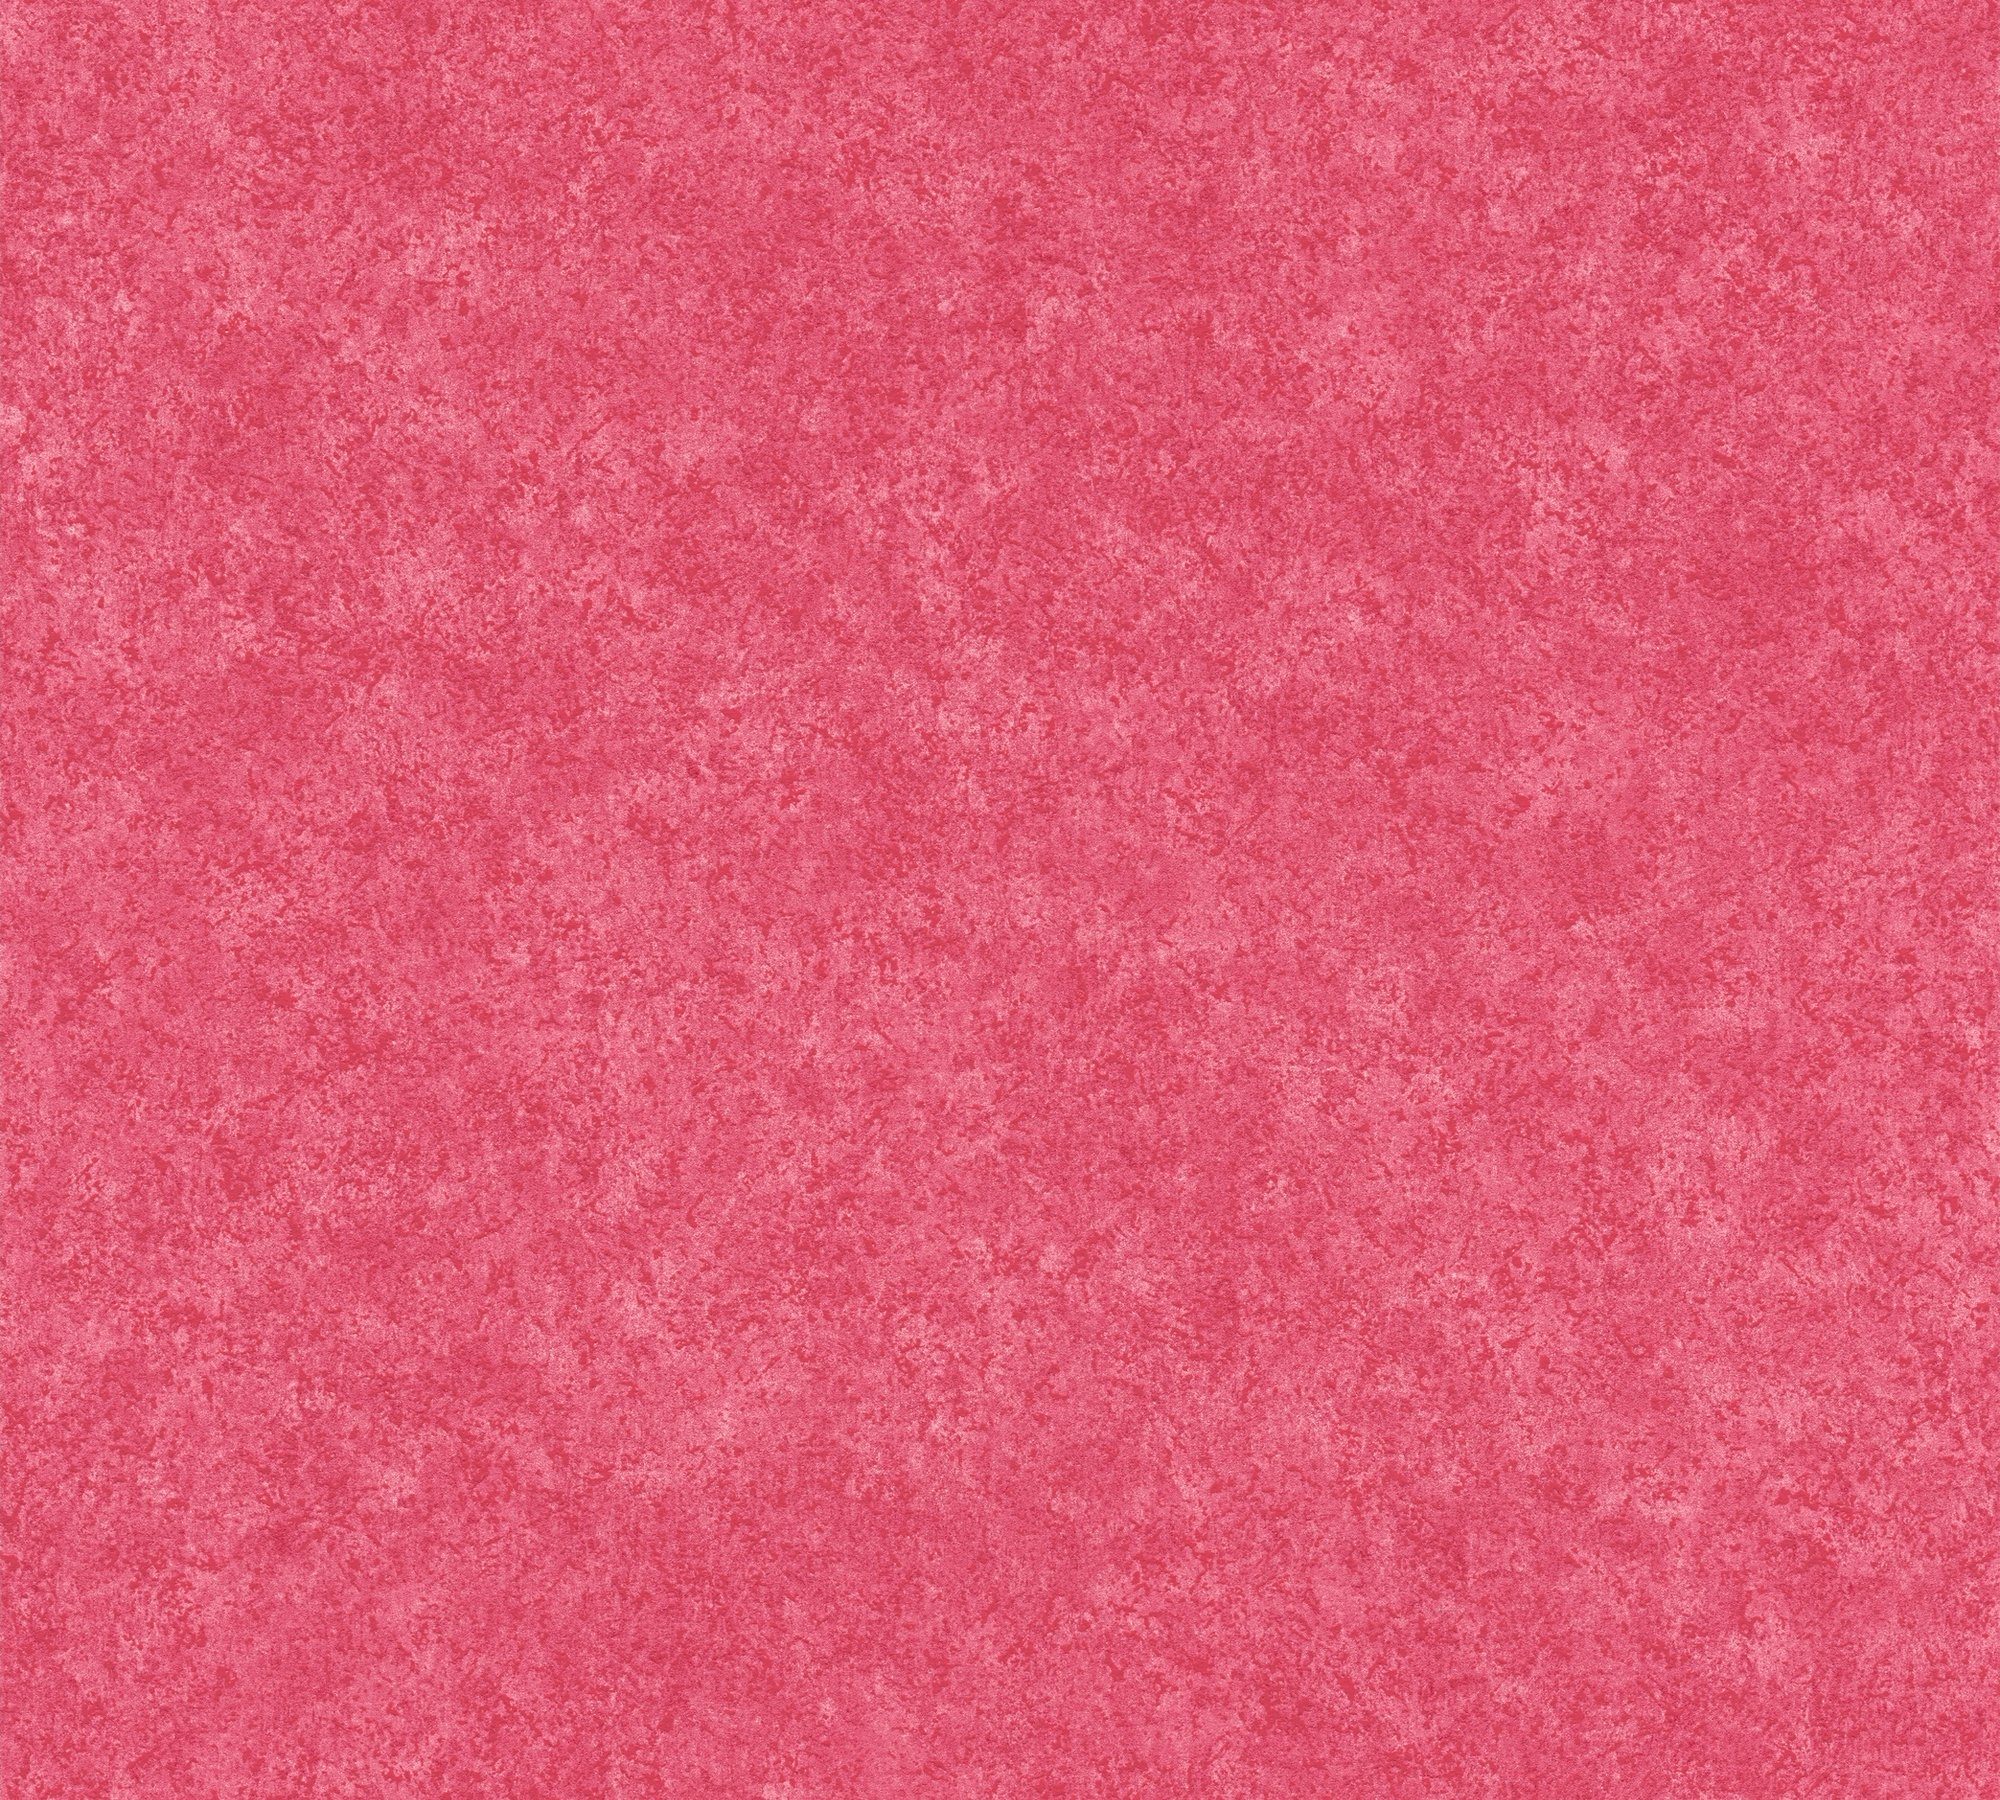 Verkauf zum Sonderpreis A.S. Création living walls Vliestapete pink Einfarbig Mio Metropolitan einfarbig, Tapete unifarben, Uni Stories, Tokio